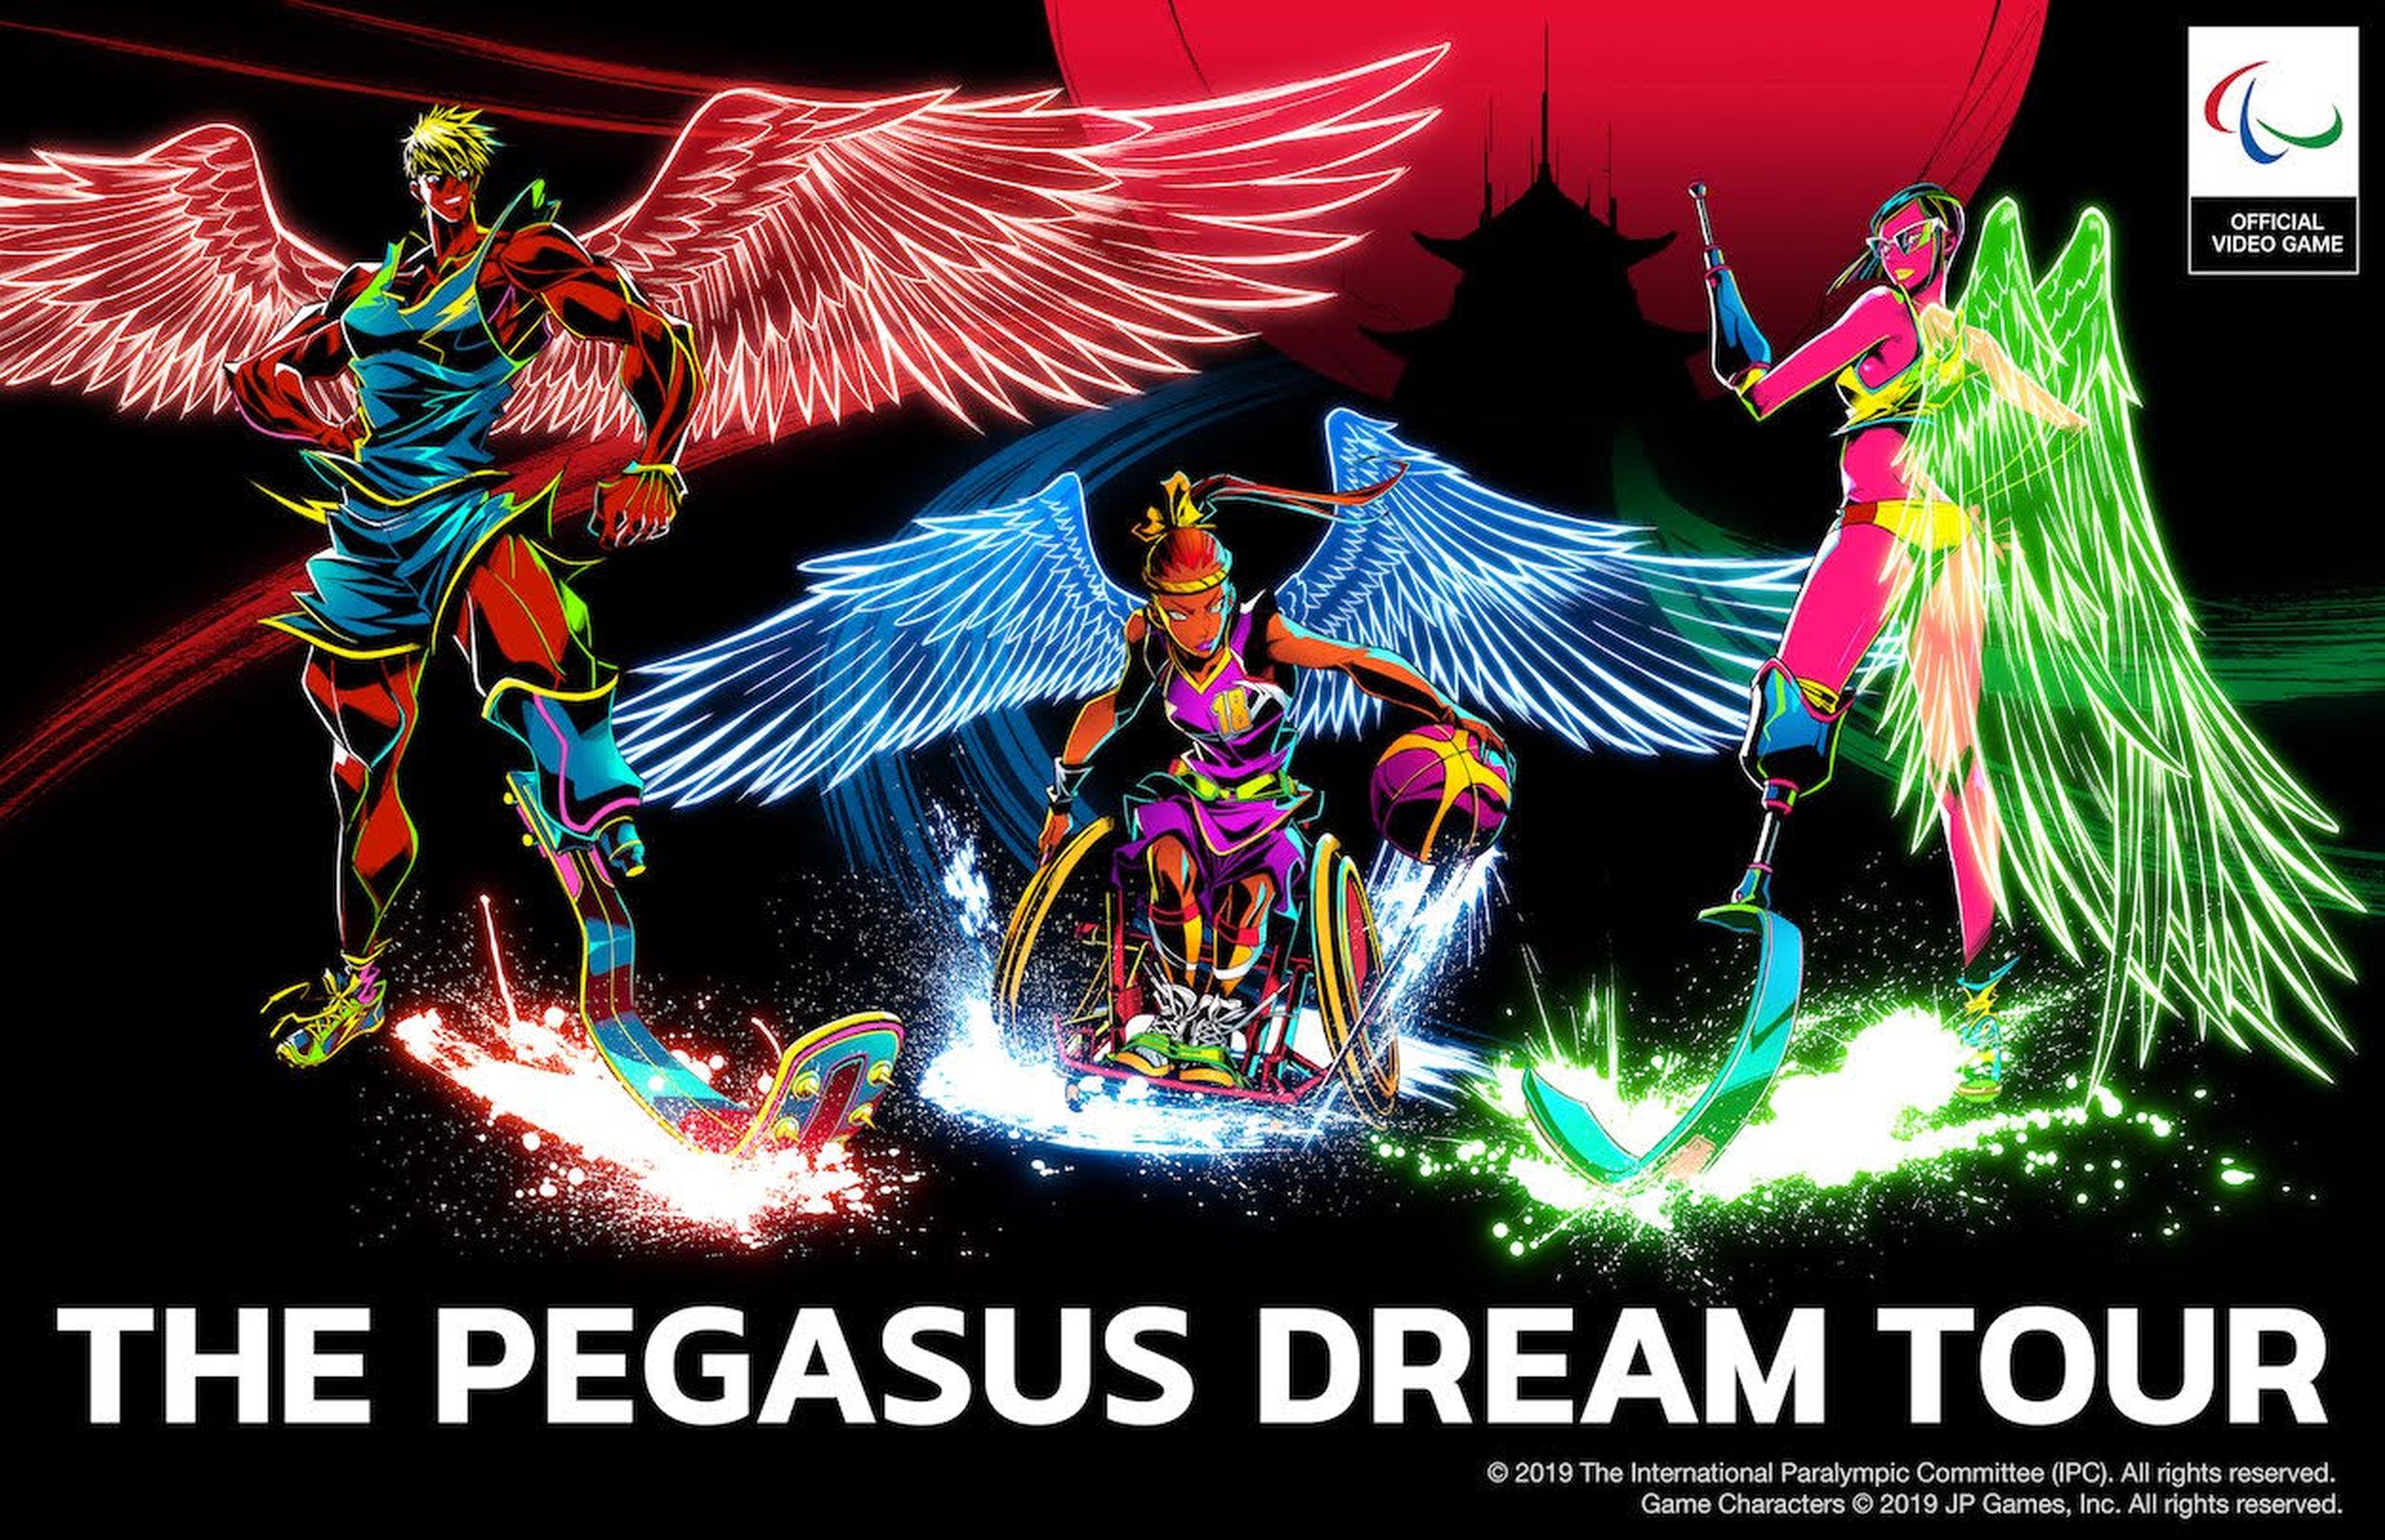 The Pegasus Dream Tour es el primer videojuego oficial de las Juegos Paralímpicos